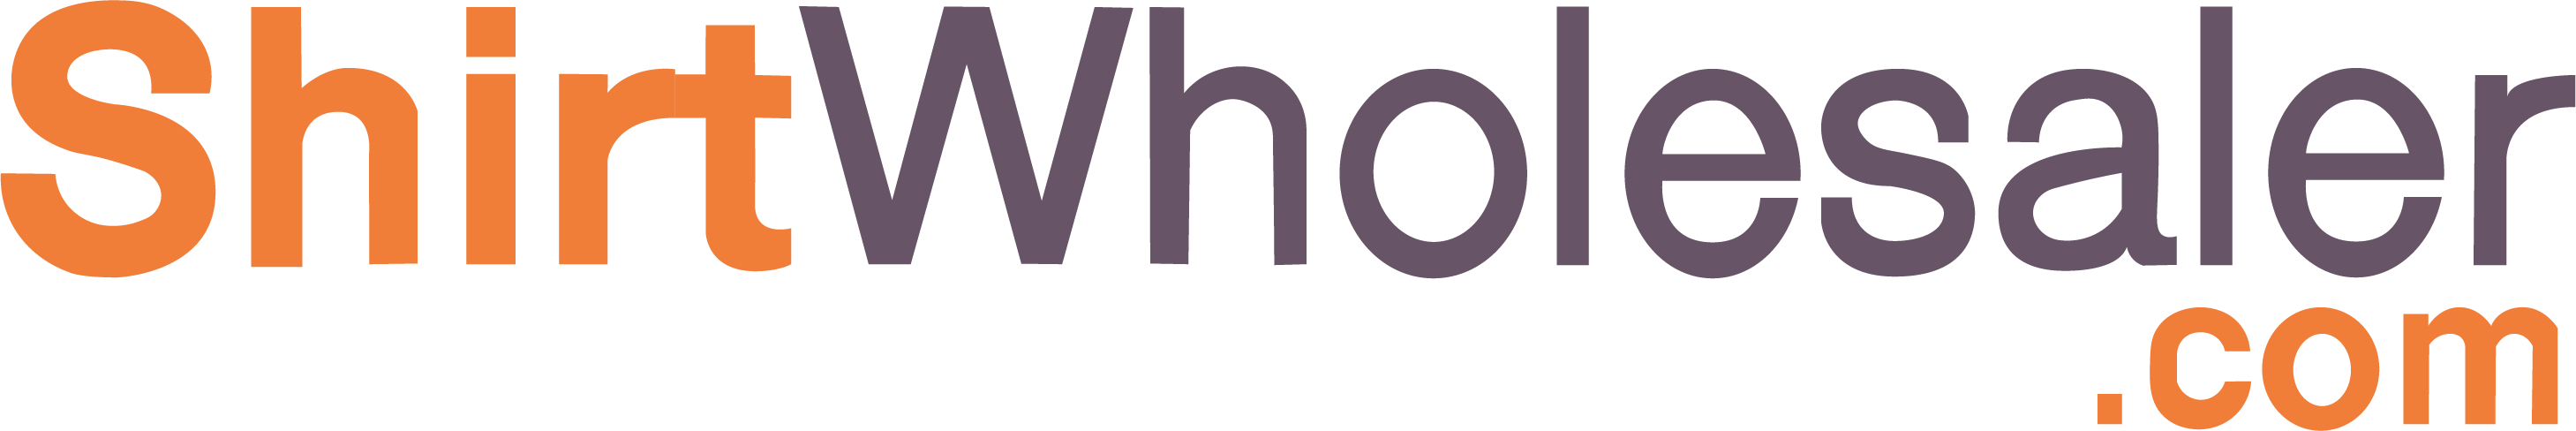 shirtwholesaler logo